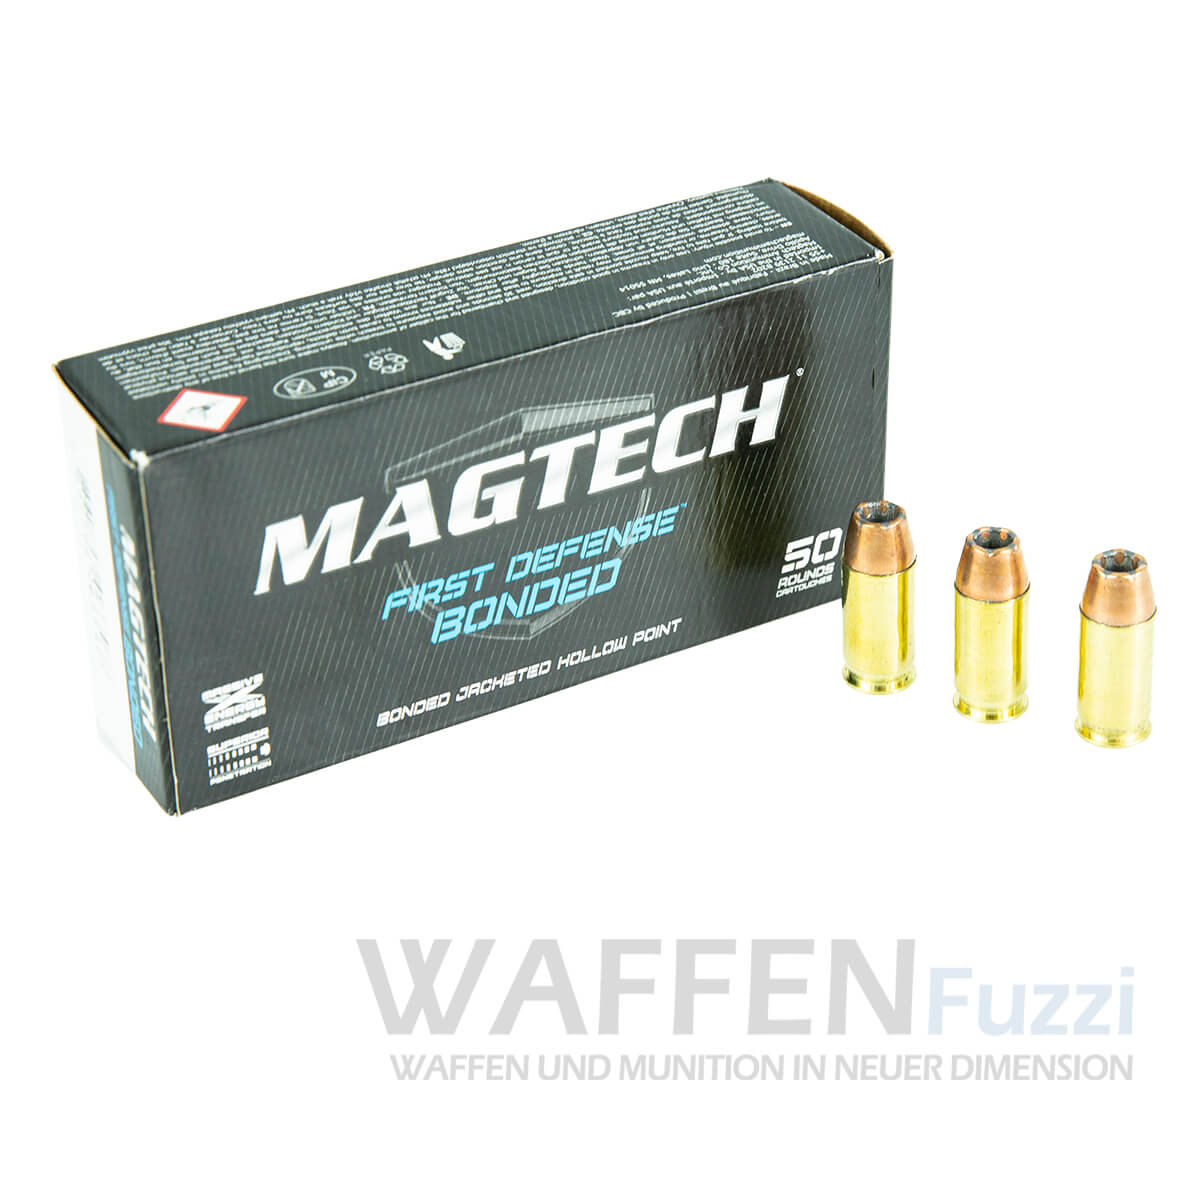 Magtech Kaliber 9mm Bonded JHP 147 grs preiswerte Staffel online bestellen und liefern lassen